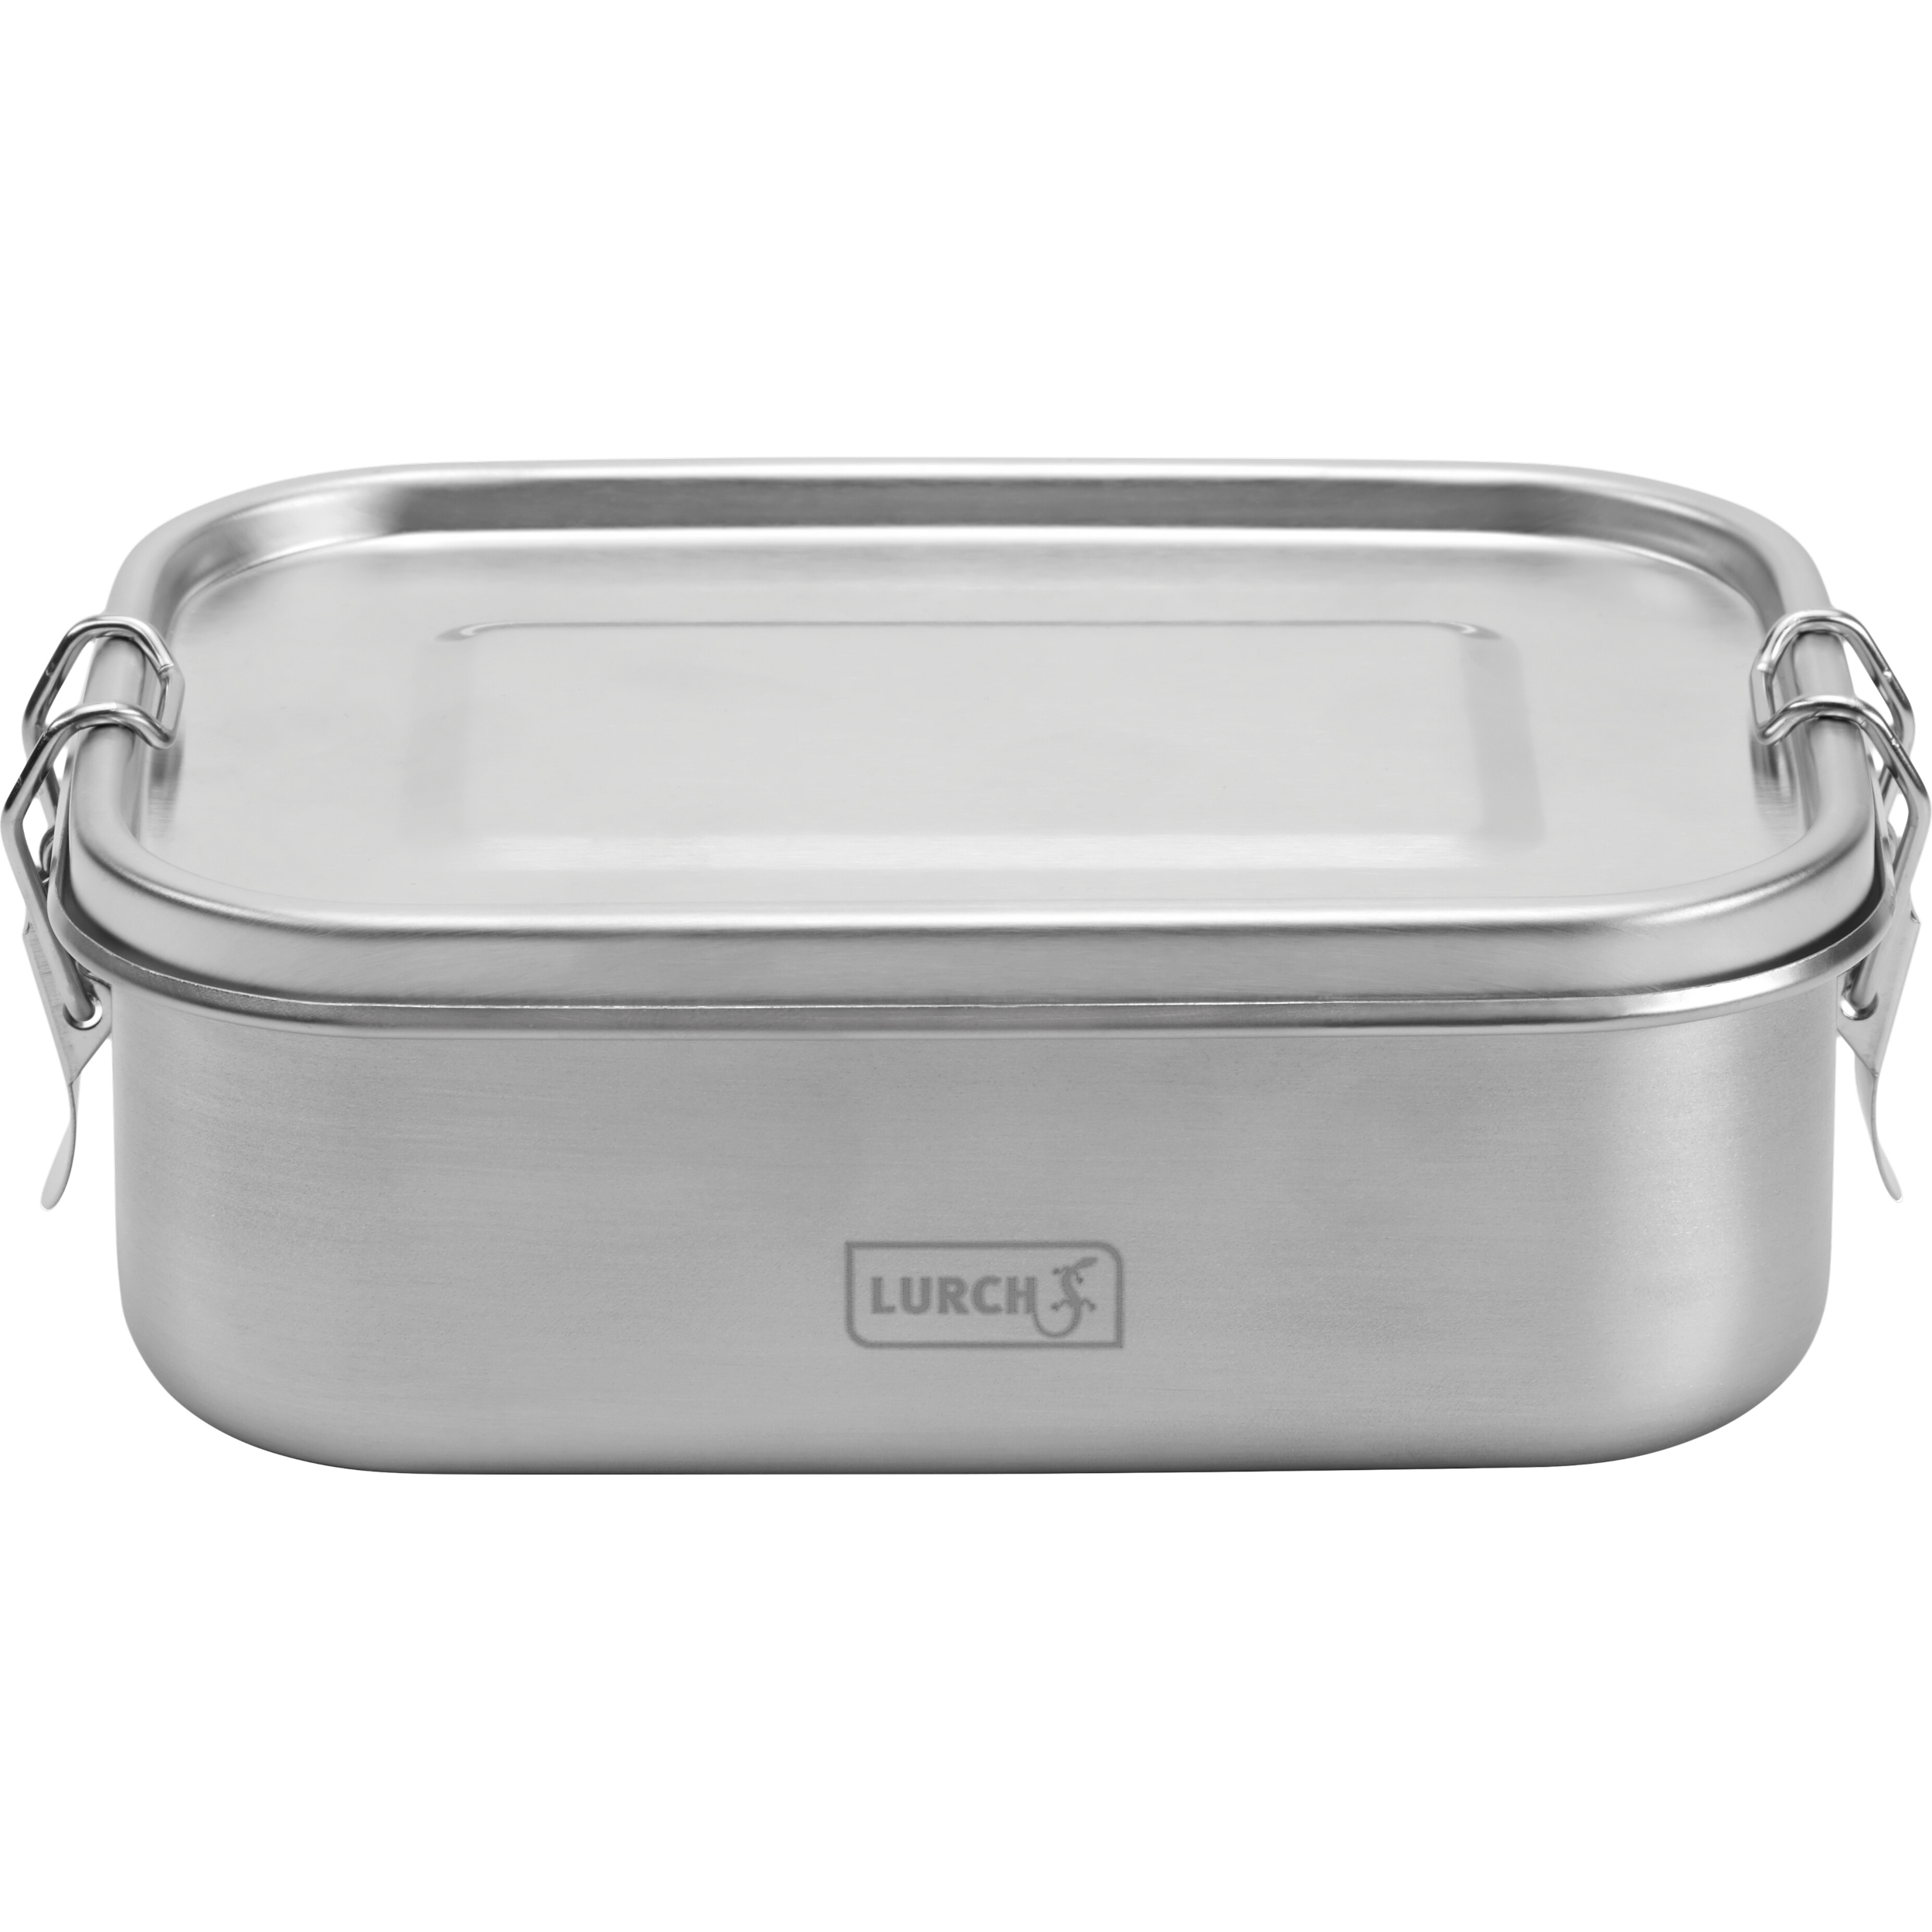 LURCH Lunchbox Edelstahl Frühstücksbox Brotdose Aufbewahrungsbox Snap 0,8 l